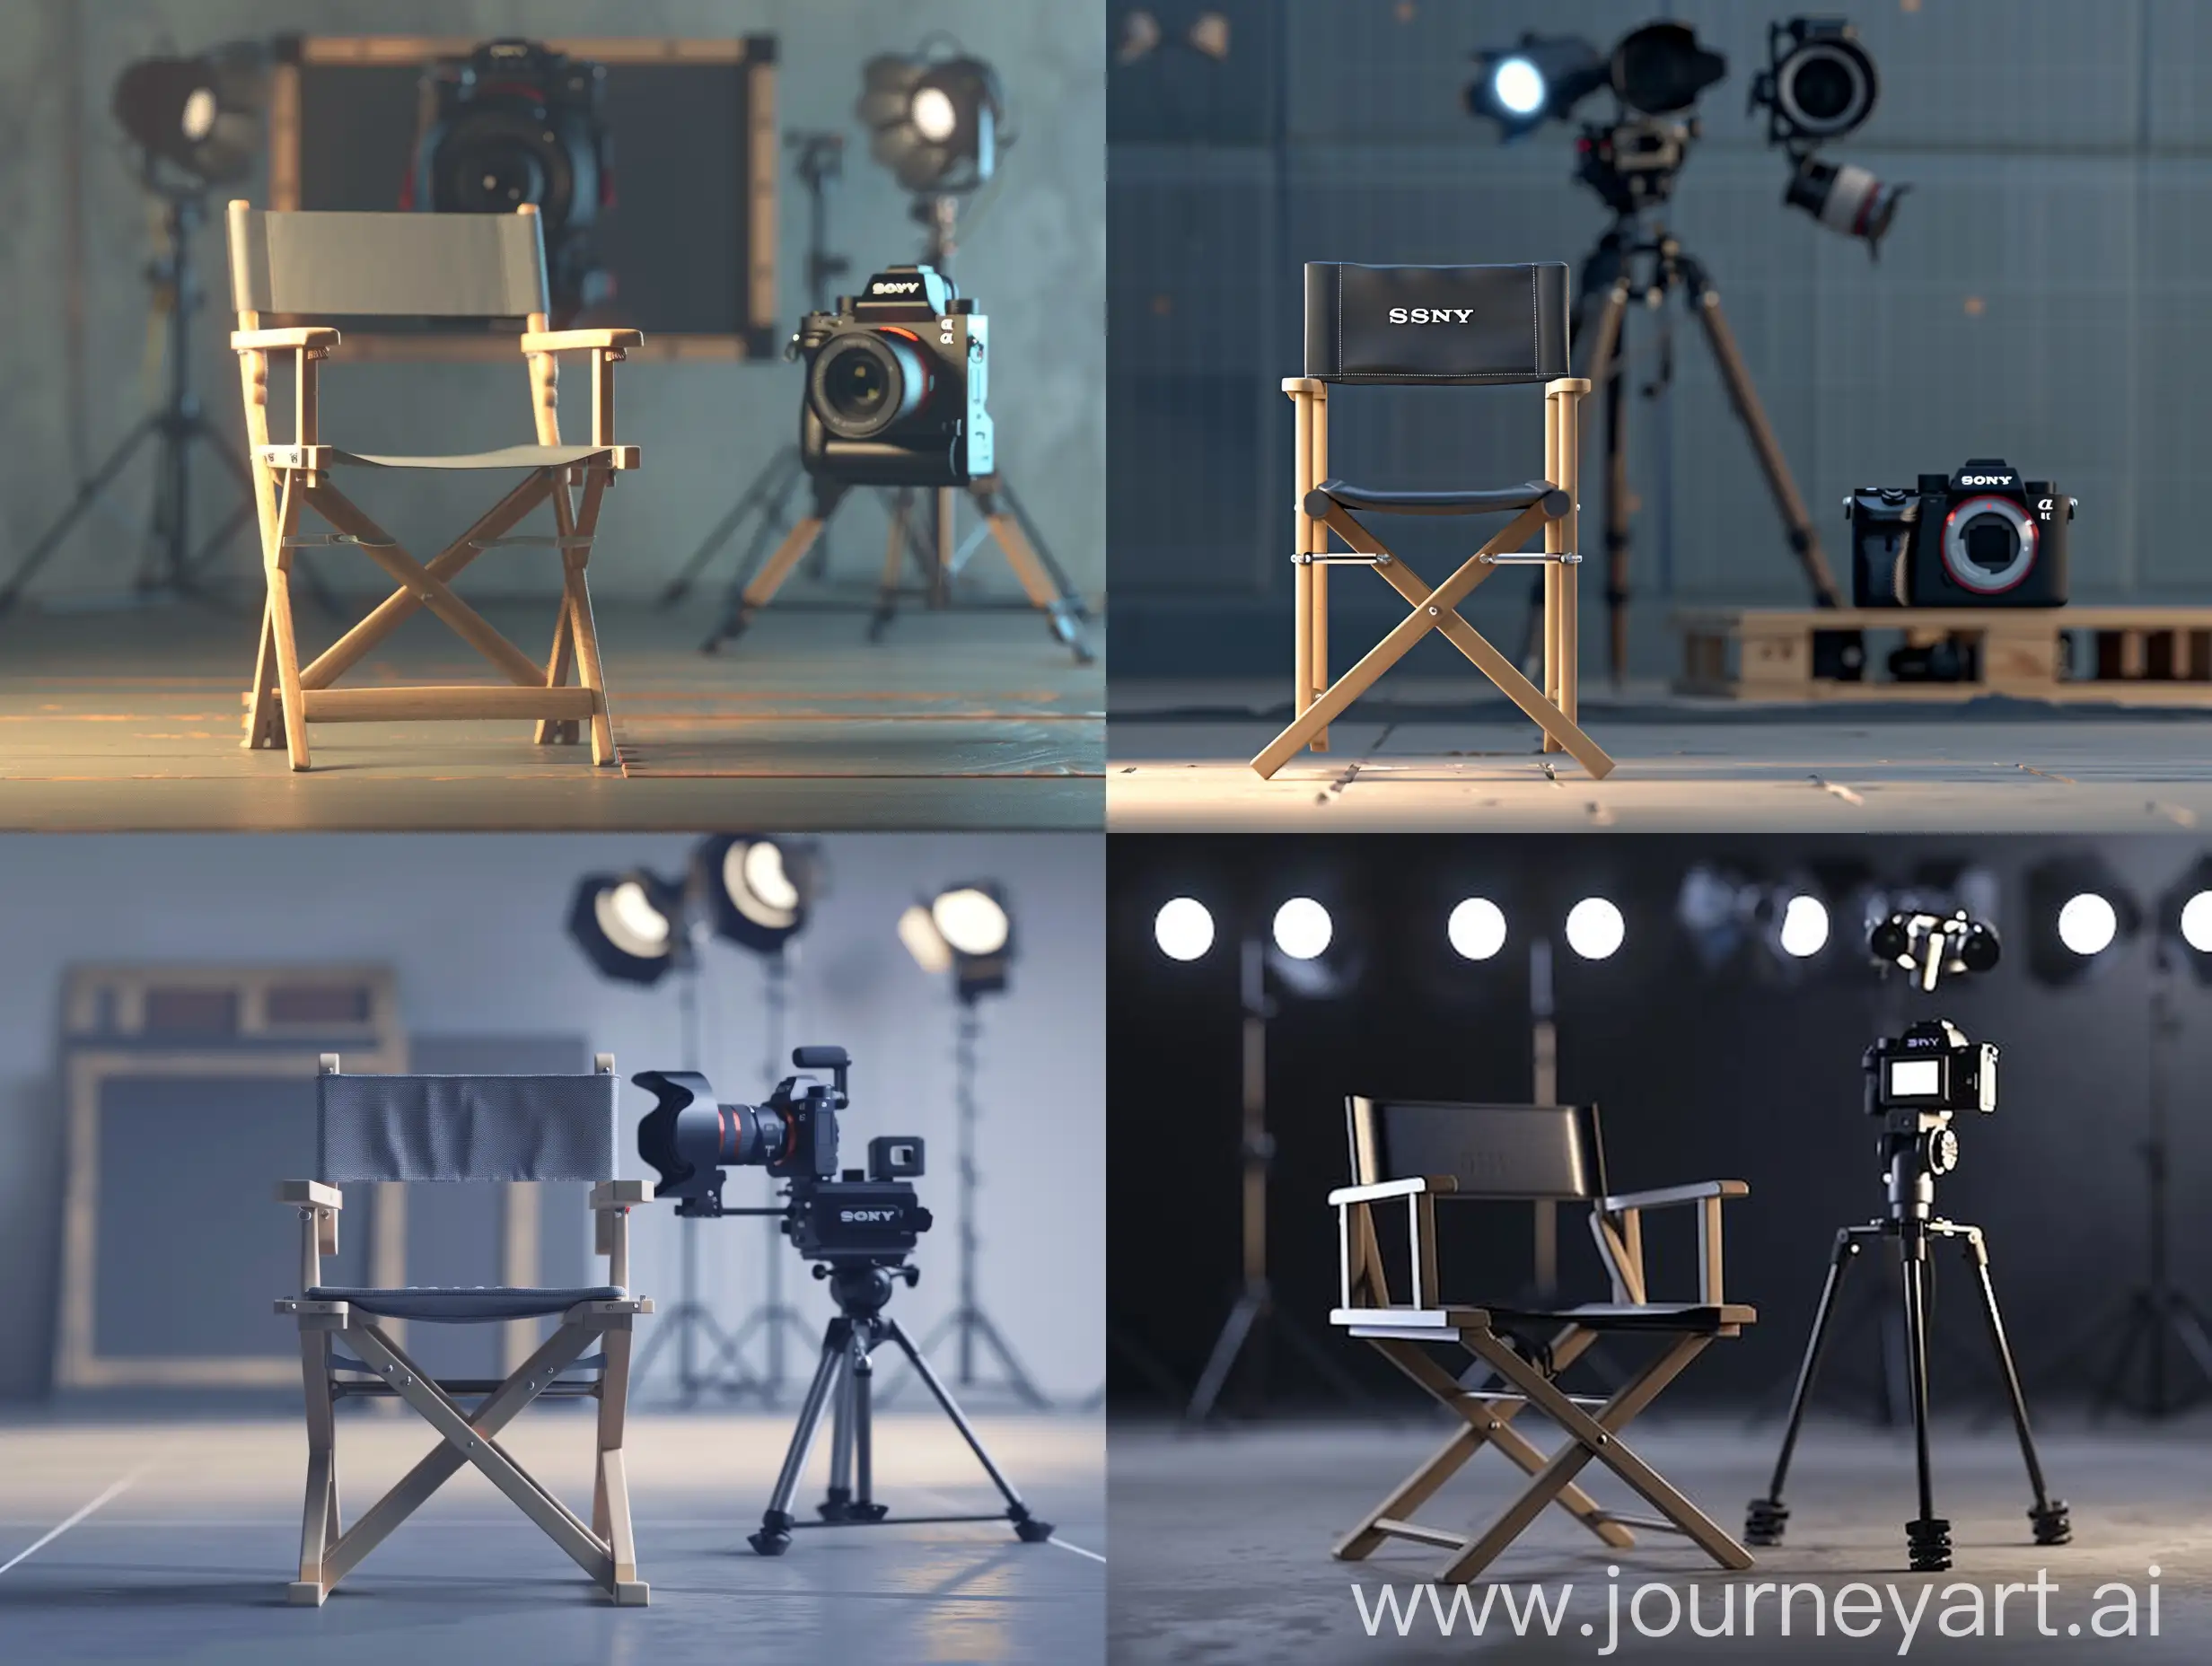 Fotorealistisch, Film, ausdrucksstark, Artdesign, Das Bild sollte einen leeren Regiesessel in Frontansicht, der Sessel ist leer, zeigen. Im Hintergrund ist rechts eine perfekte Kamera der Marke Sony aufgestellt. Oben drüber sind Leuchten angebracht. 